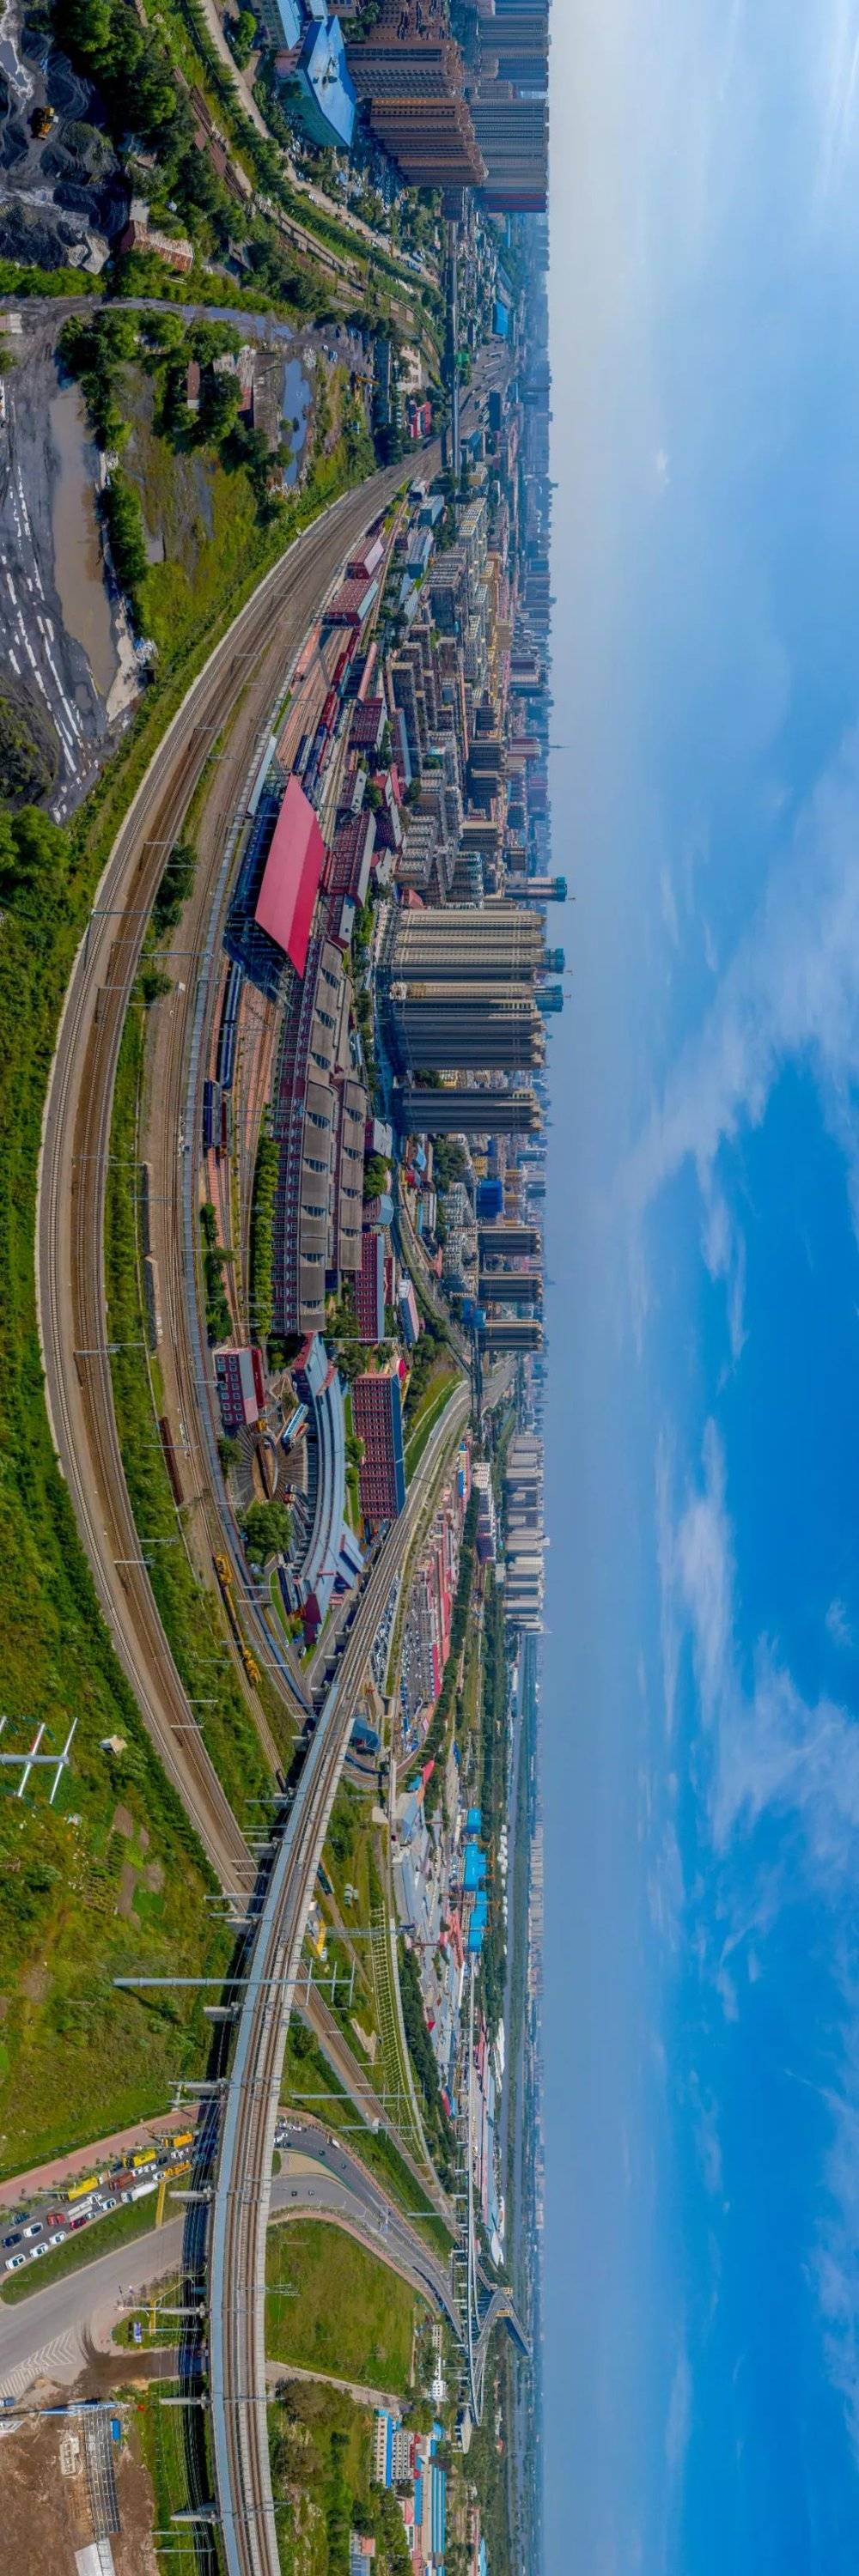 ‍哈尔滨是因铁路而生的城市，市内铁道四通八达。‍‍‍摄影/赵斌